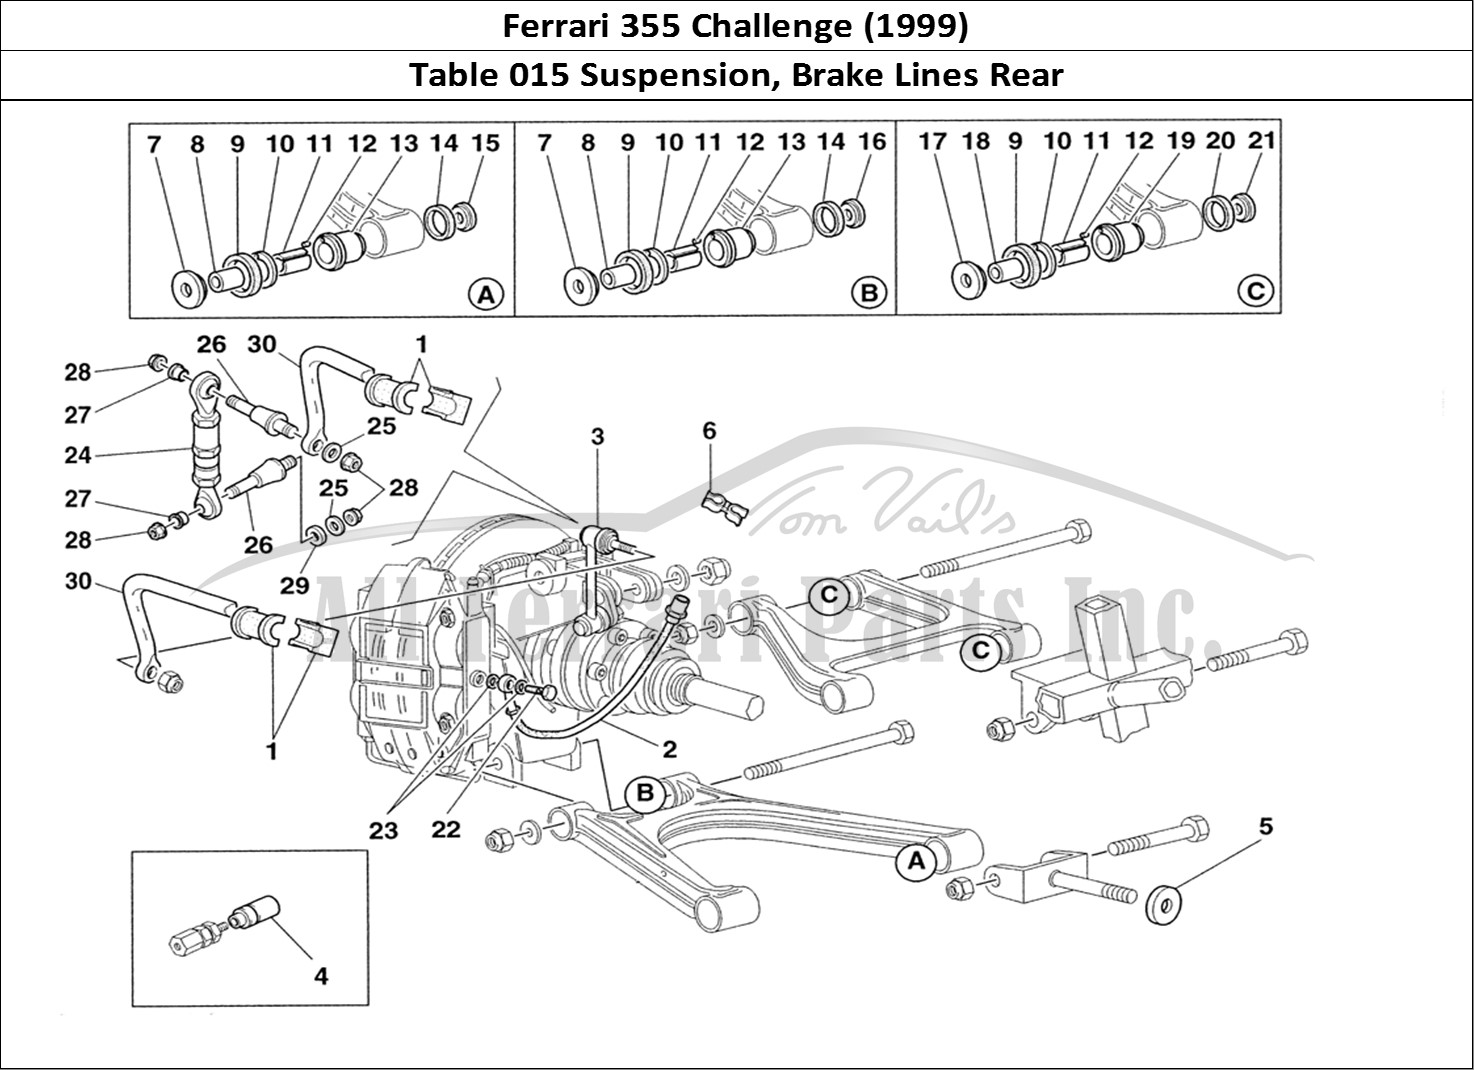 Ferrari Parts Ferrari 355 Challenge (1999) Page 015 Rear Suspension and Brake